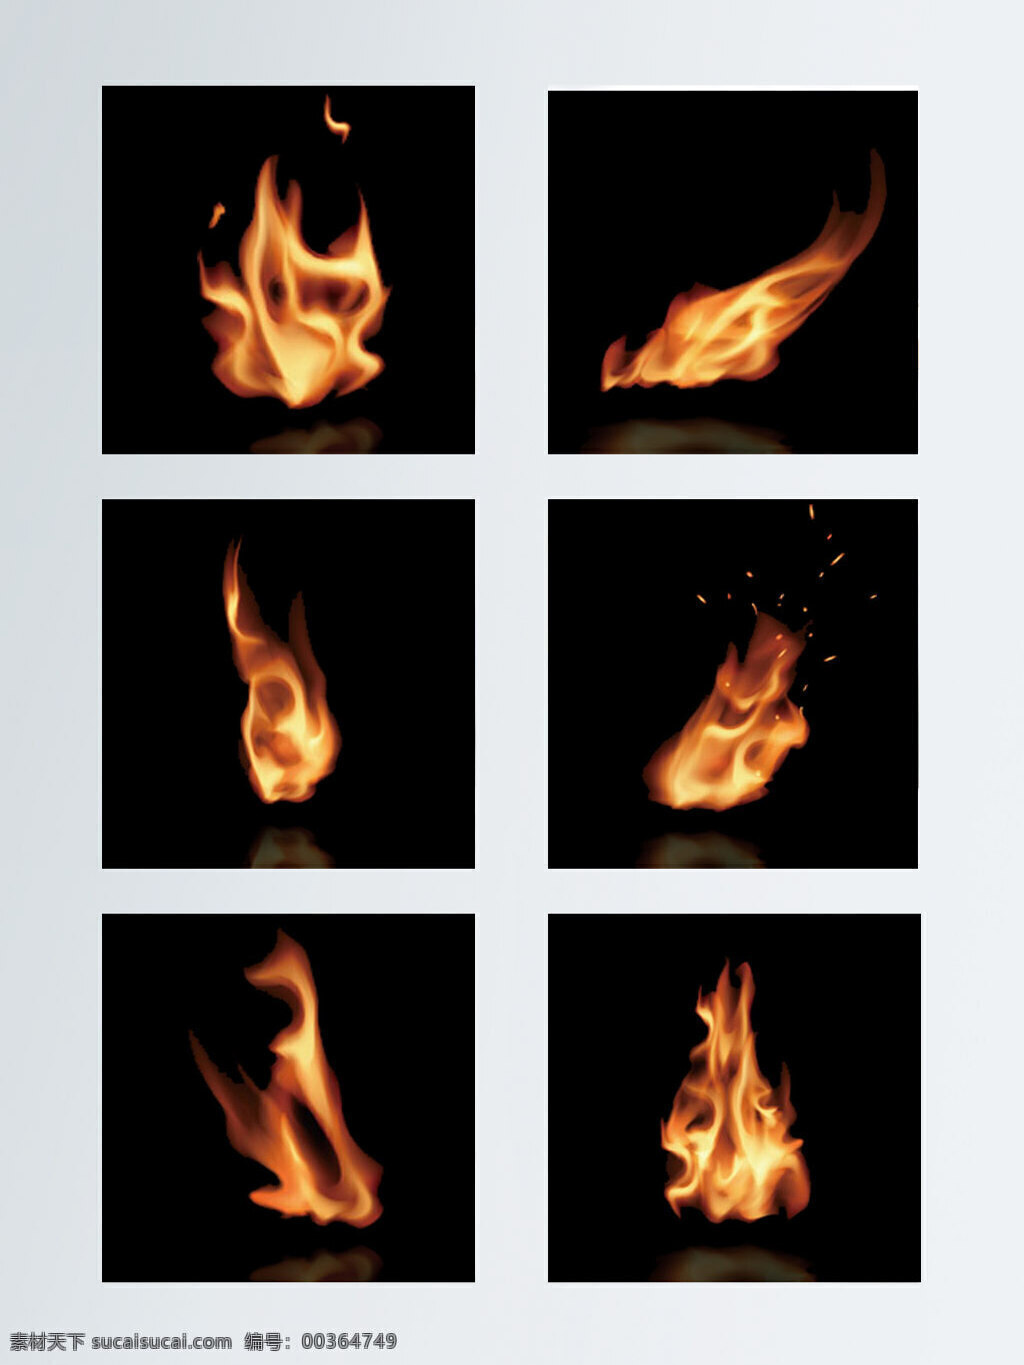 火焰 酷 炫 效果 元素 设计素材 红色 火花 火苗 火焰特效 火焰效果 酷炫 燃烧